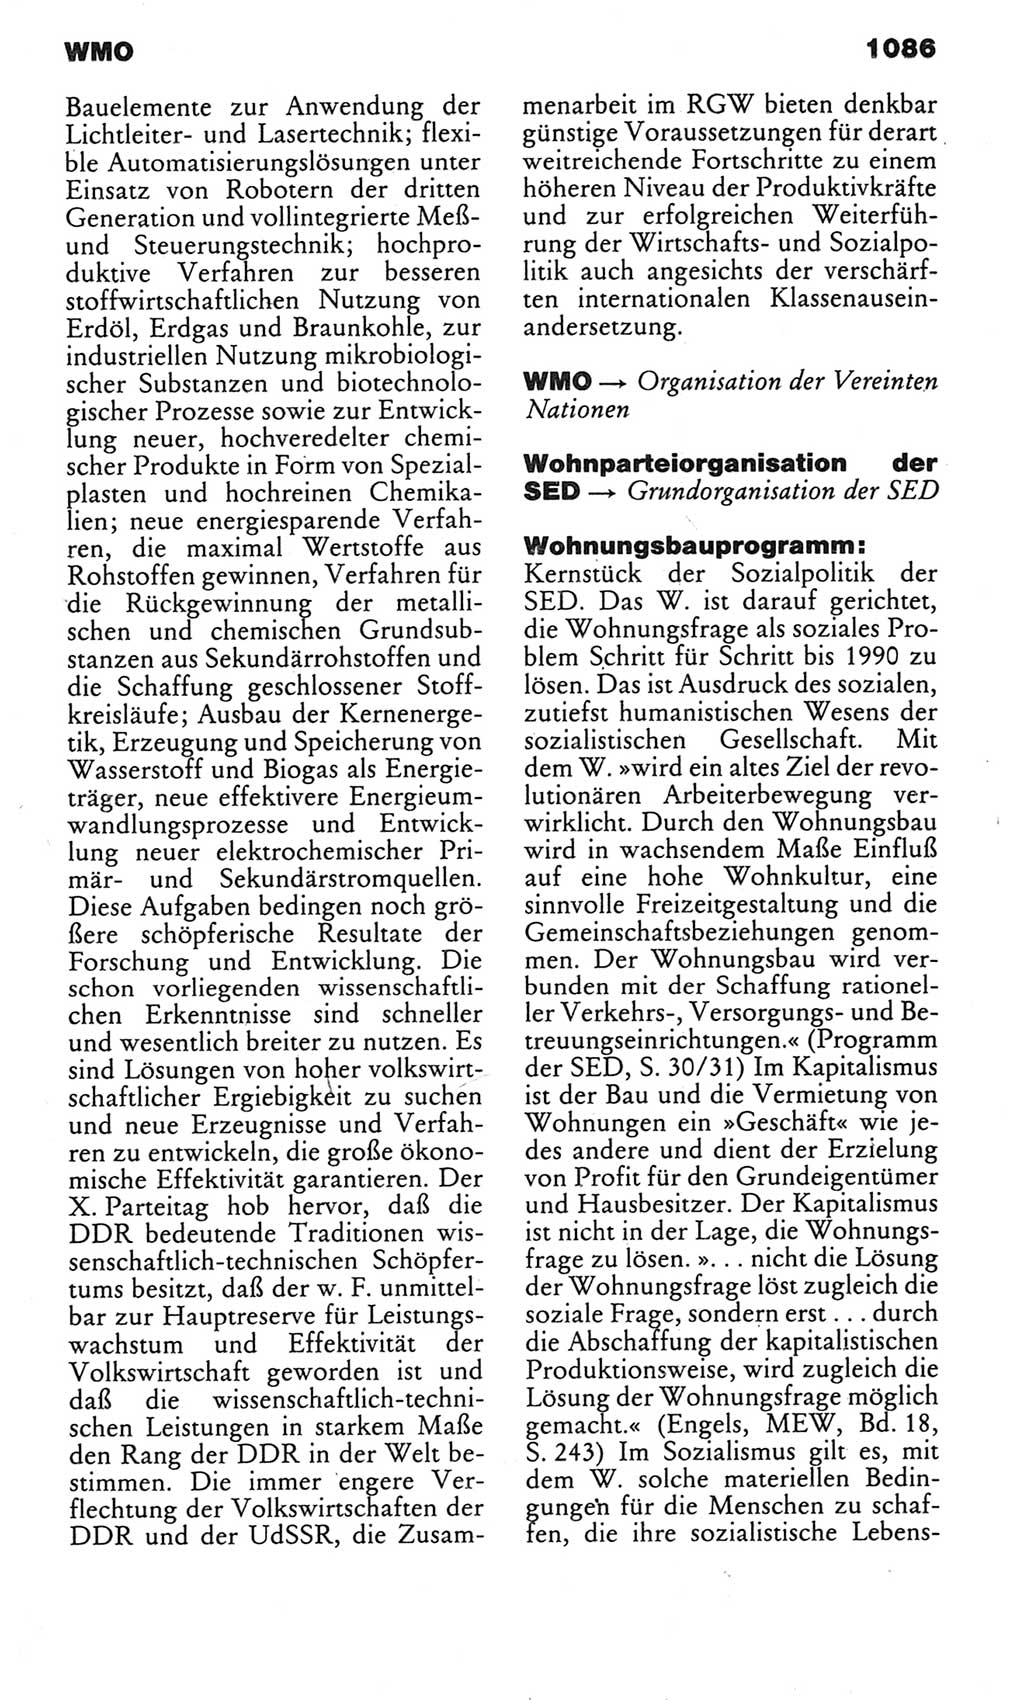 Kleines politisches Wörterbuch [Deutsche Demokratische Republik (DDR)] 1983, Seite 1086 (Kl. pol. Wb. DDR 1983, S. 1086)